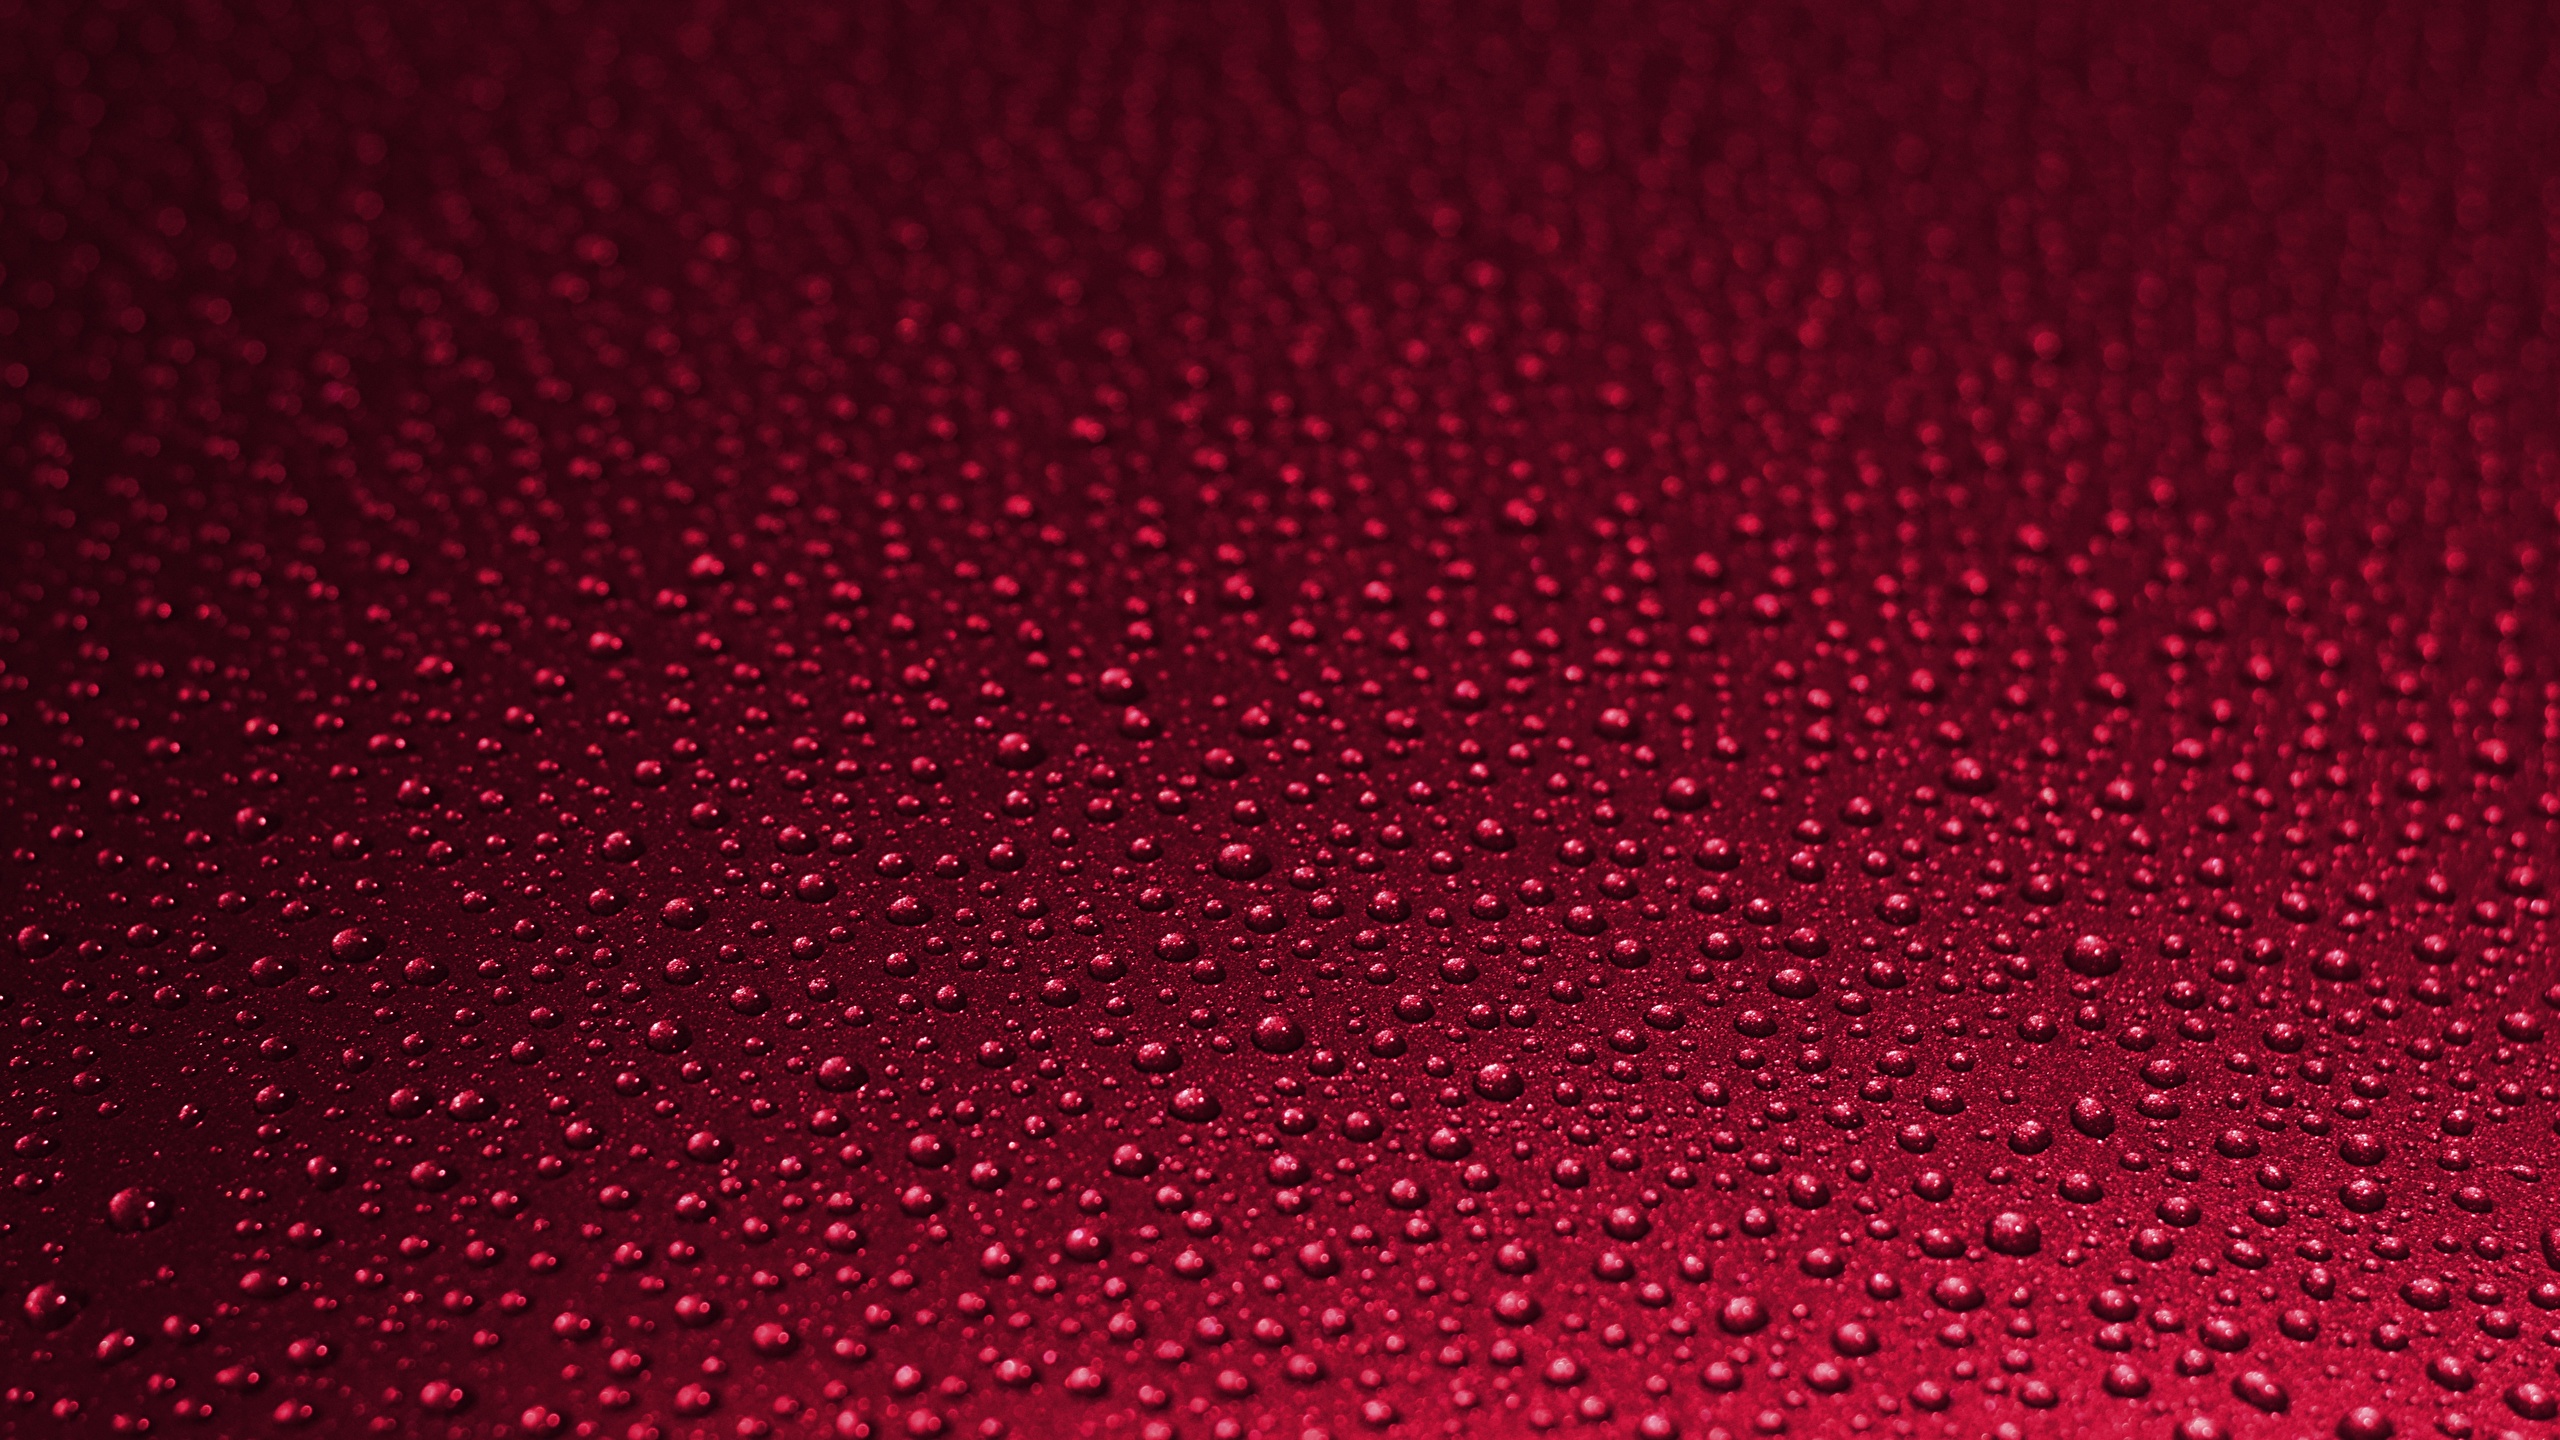 壁紙 2560x1440 テクスチャー 赤 水滴 赤の背景 ダウンロード 写真